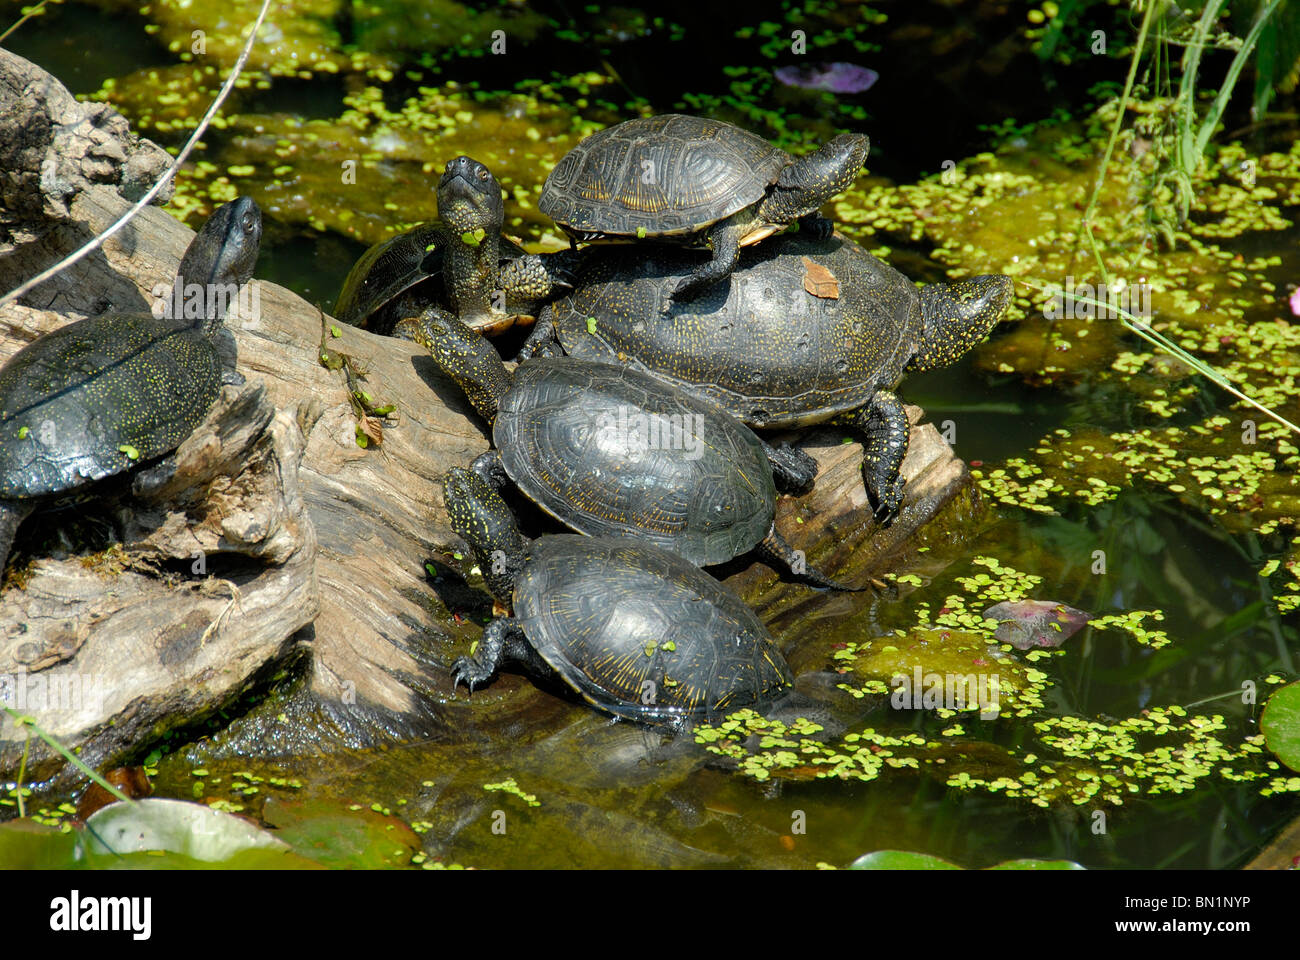 Болото черепахи. Европейская Болотная черепаха. Европейская Болотная черепаха (Emys orbicularis). Колхидская Болотная черепаха. Болотная черепаха Emys orbicularis (Linnaeus, 1758).